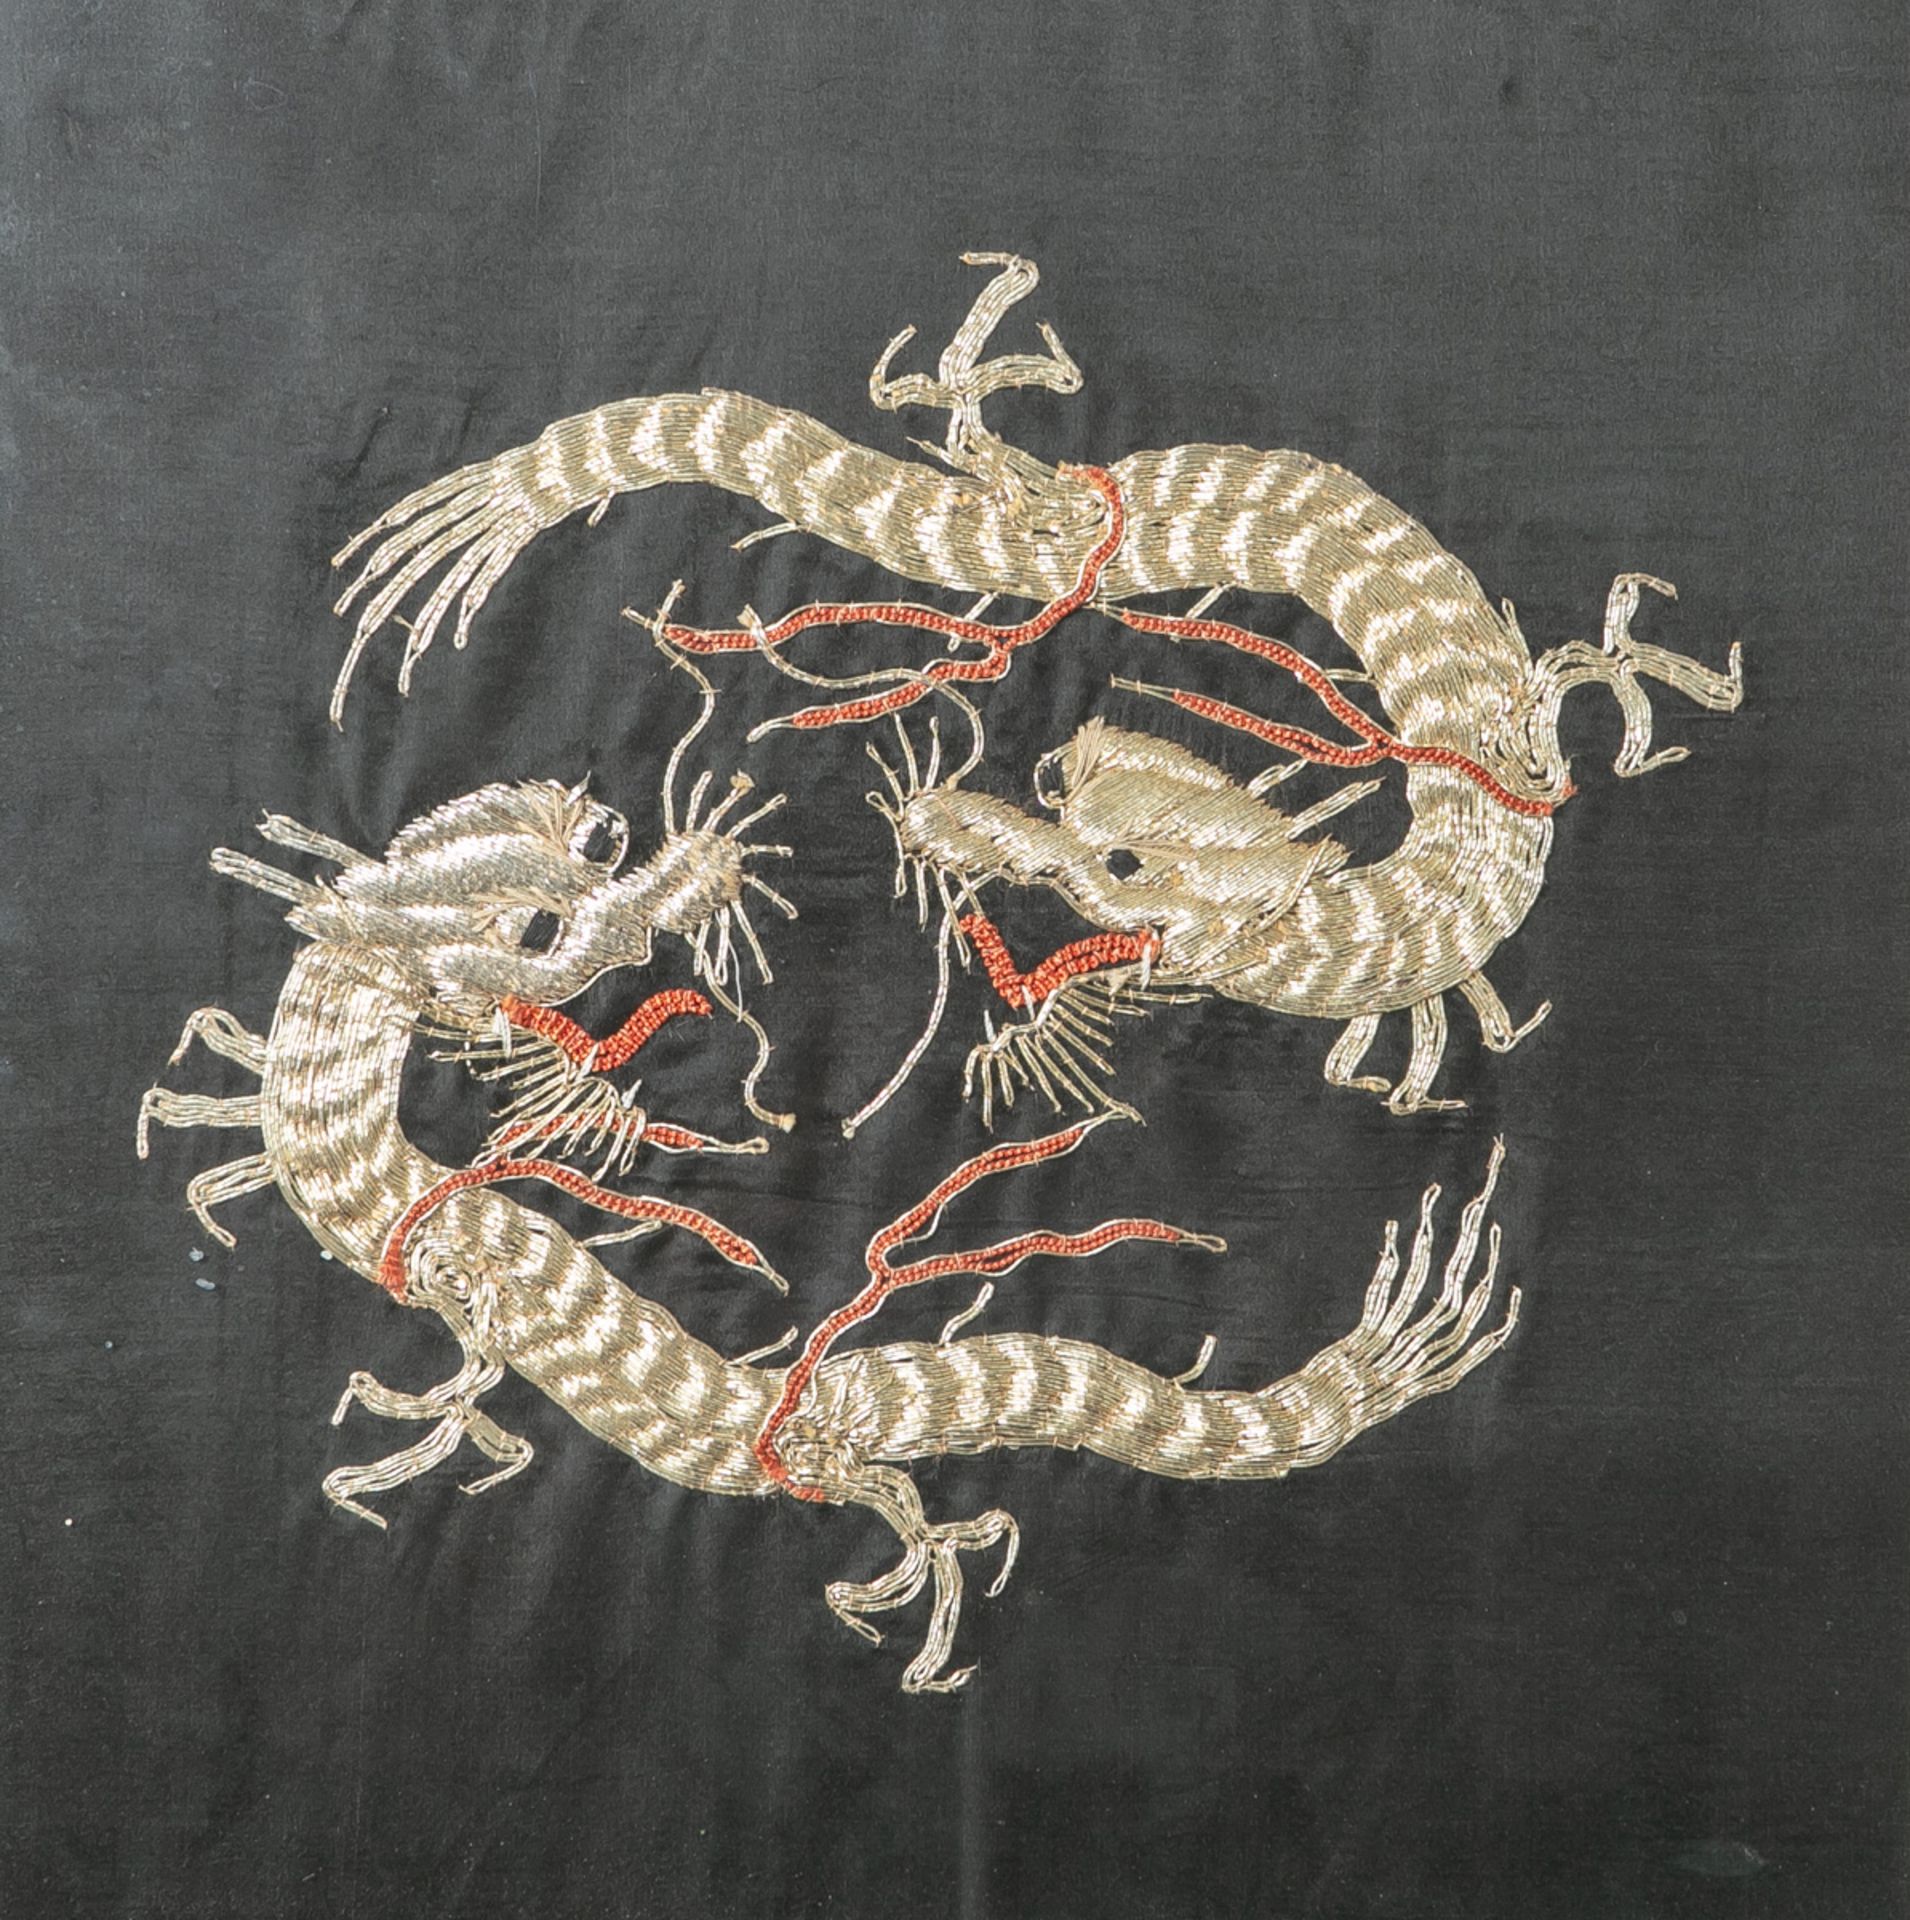 Seidenstickarbeit (China, wohl 1. Hälfte 20. Jahrhundert), zwei Drachen in feinerGoldstickarbeit auf